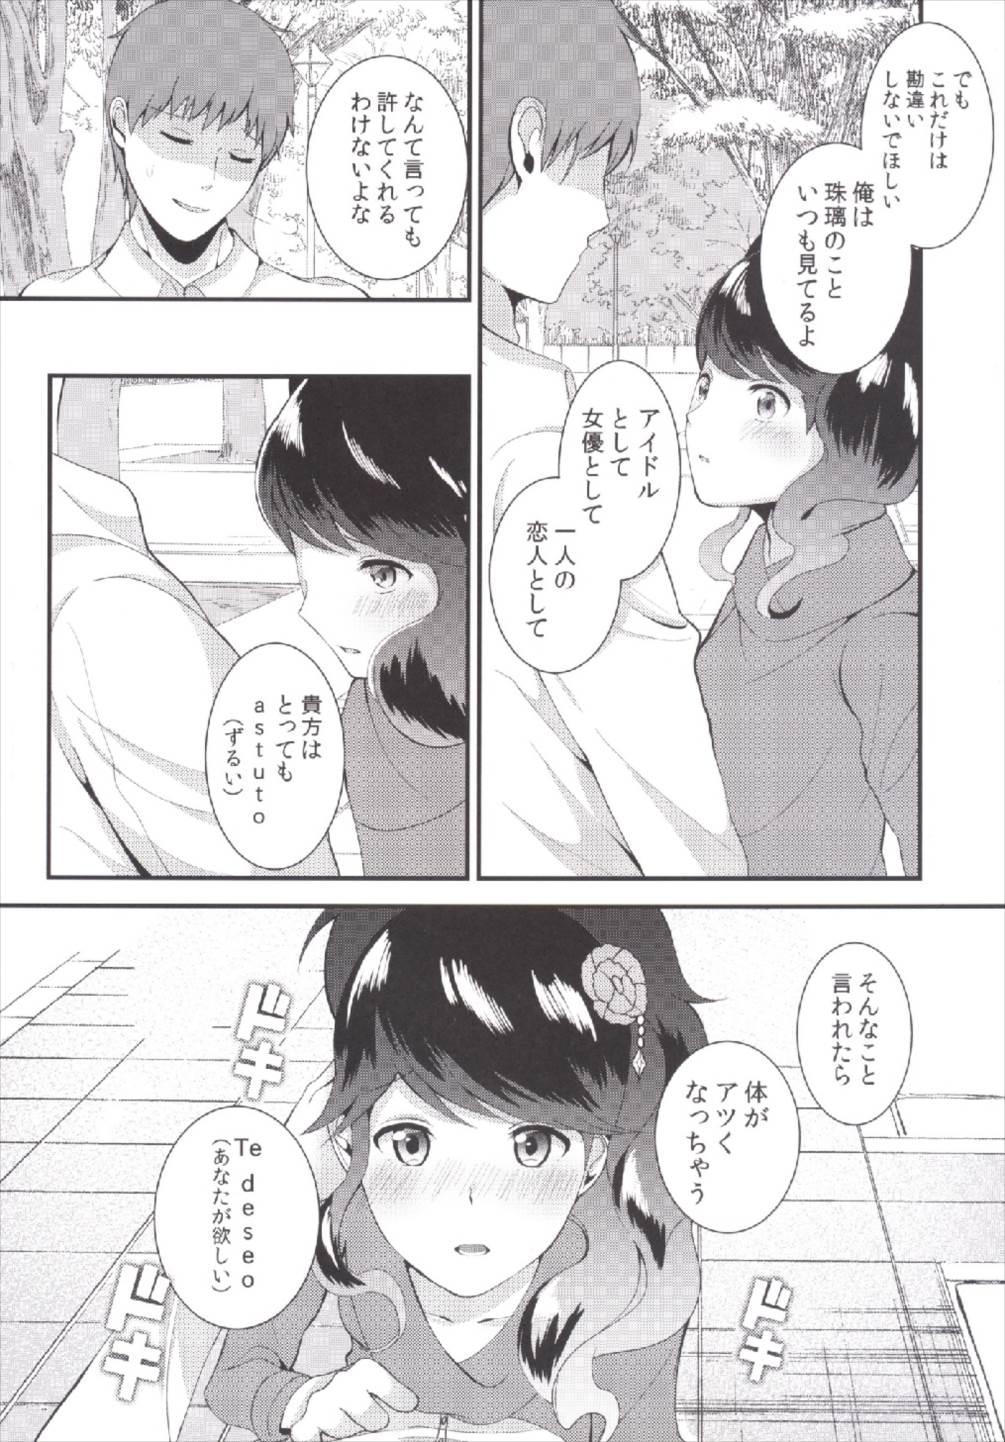 Playing Watashi o Minaide - Aikatsu Eating - Page 8